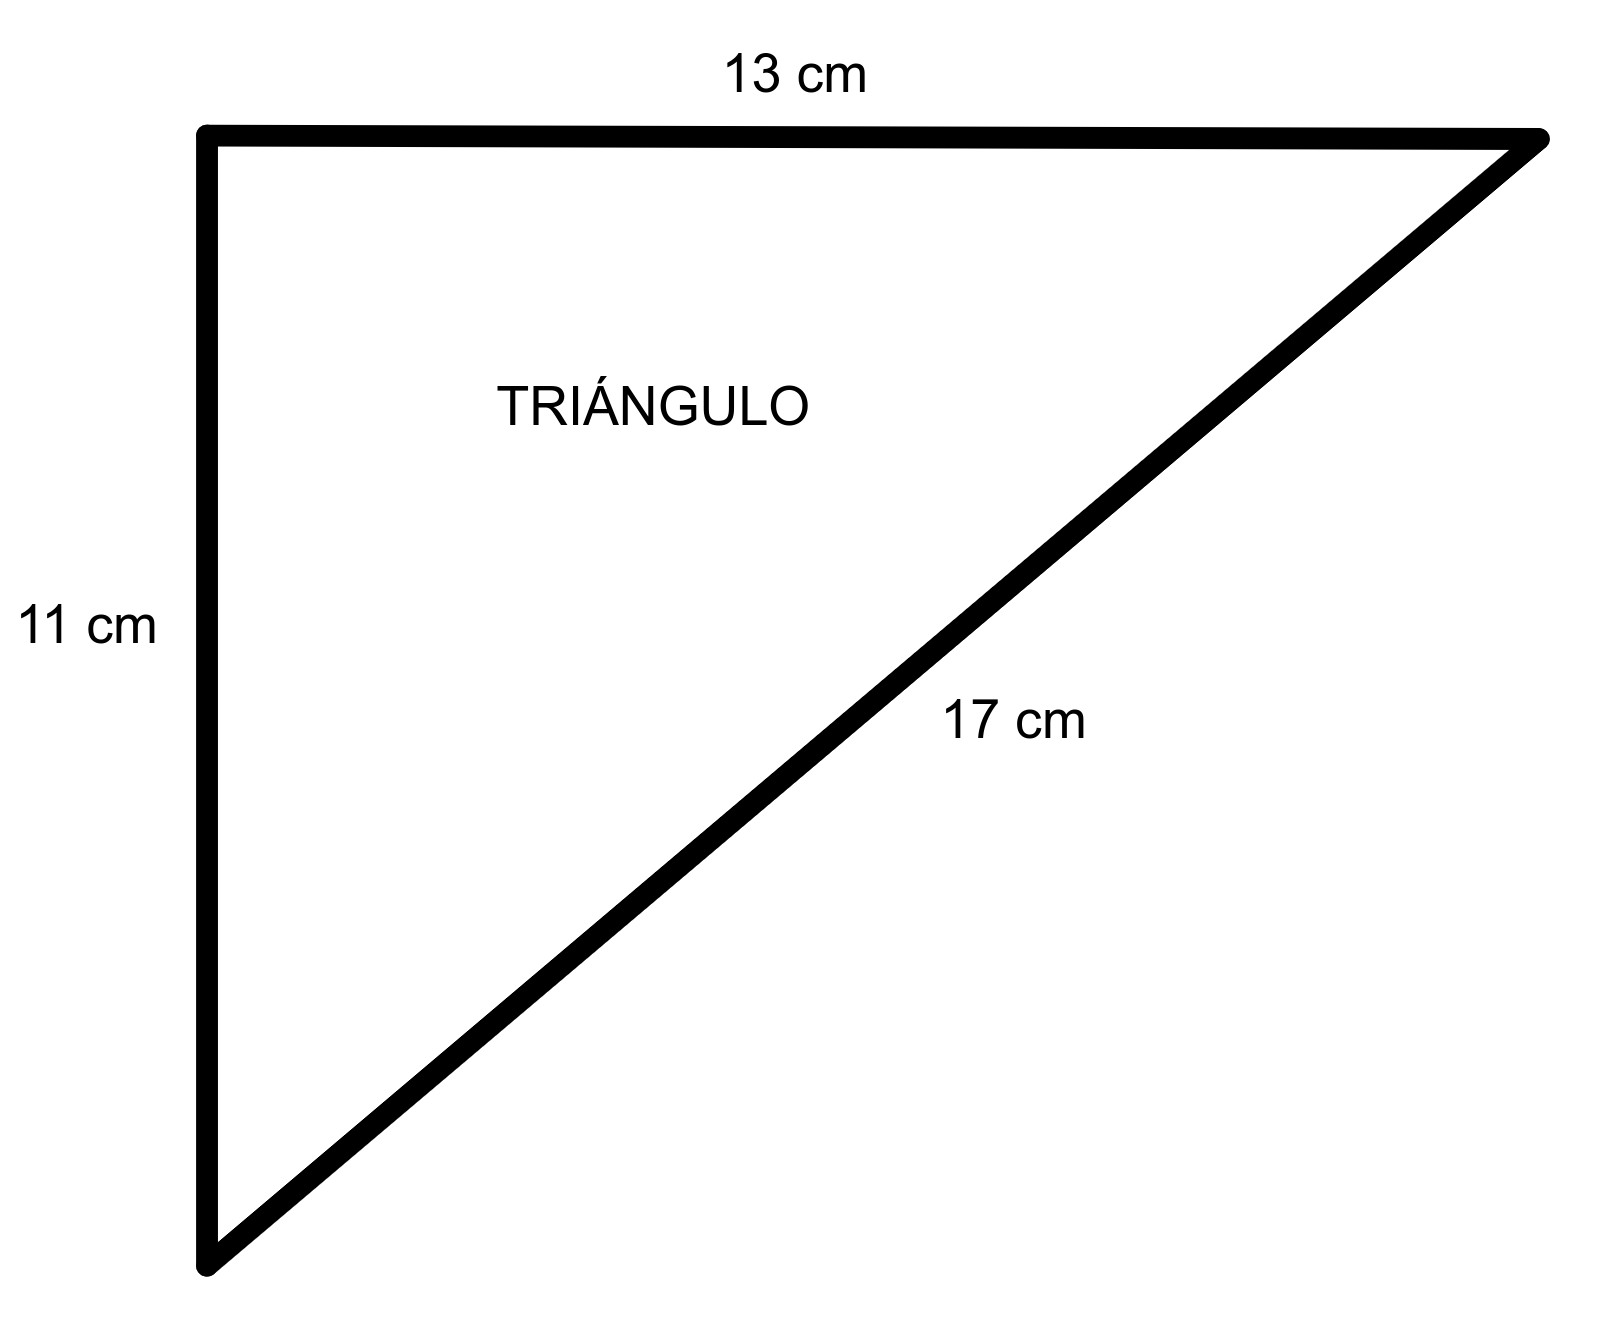 Perímetro del triángulo